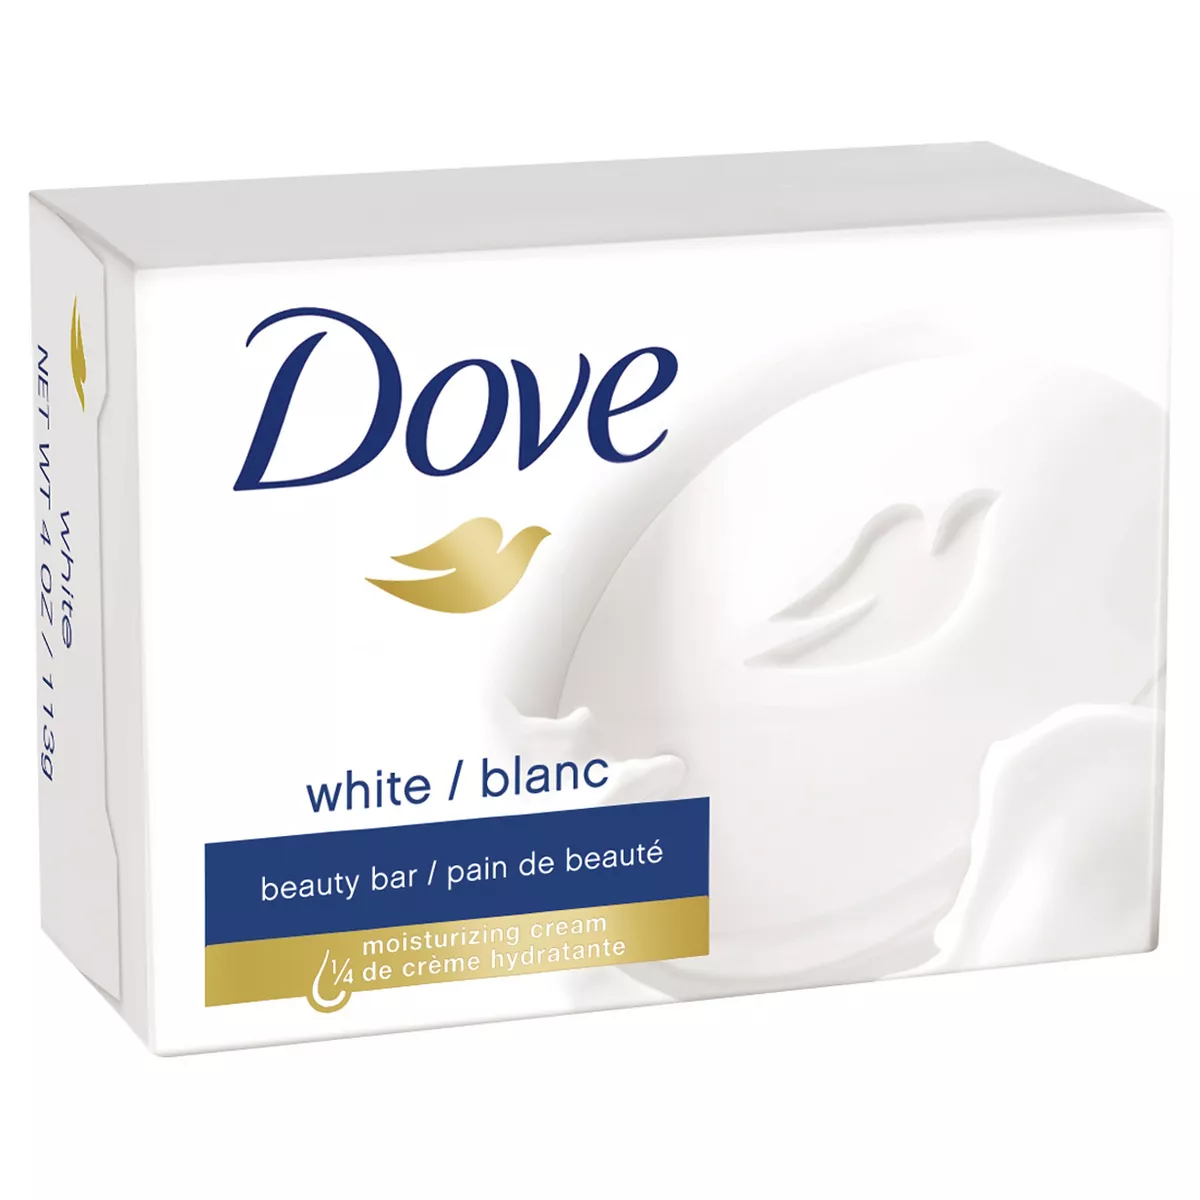 Dove white bar soap 3